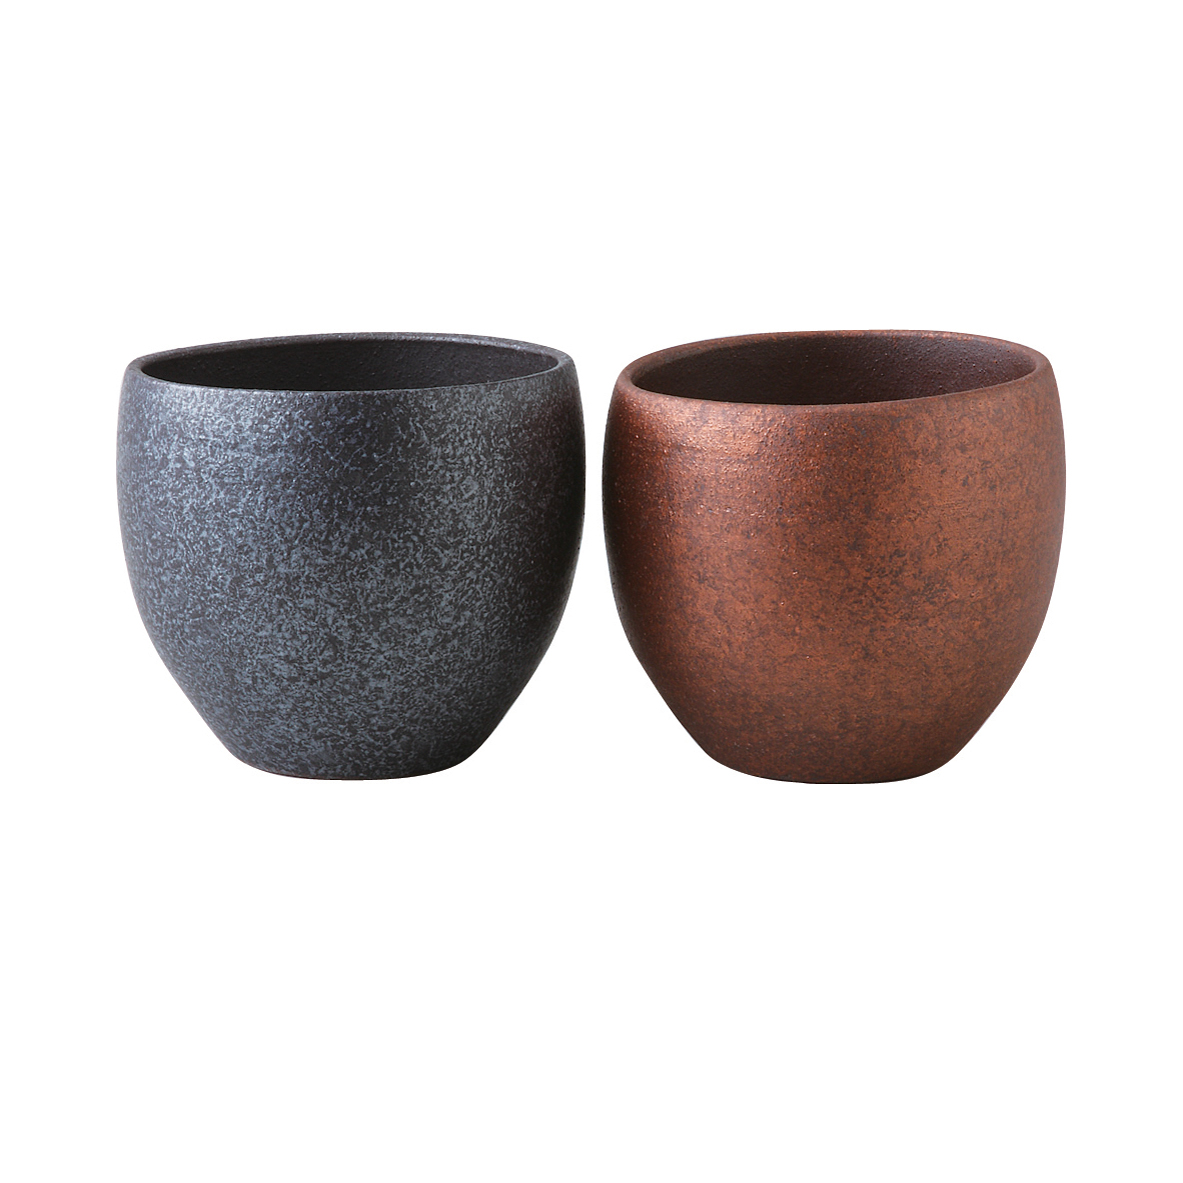 格安販売中 銅器彩 ロックカップペア 波佐見焼 Doukisai rock cup pair Hasami ware Japanese  ceramic.